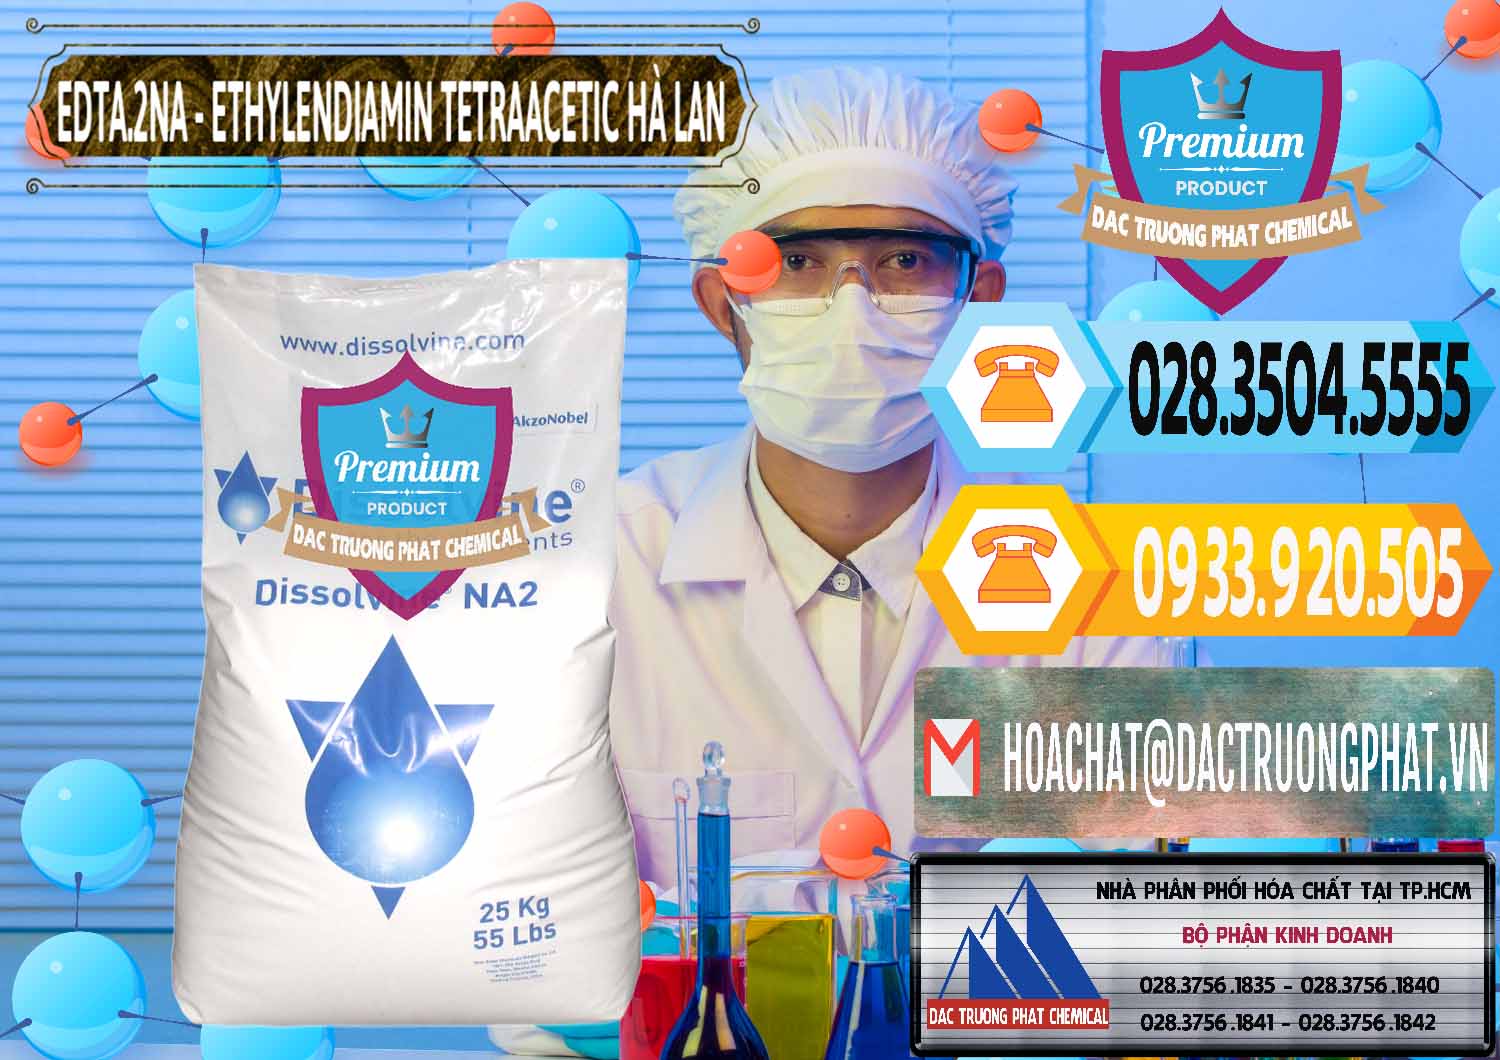 Chuyên kinh doanh & bán EDTA.2NA - Ethylendiamin Tetraacetic Dissolvine Hà Lan Netherlands - 0064 - Cty nhập khẩu và cung cấp hóa chất tại TP.HCM - hoachattayrua.net